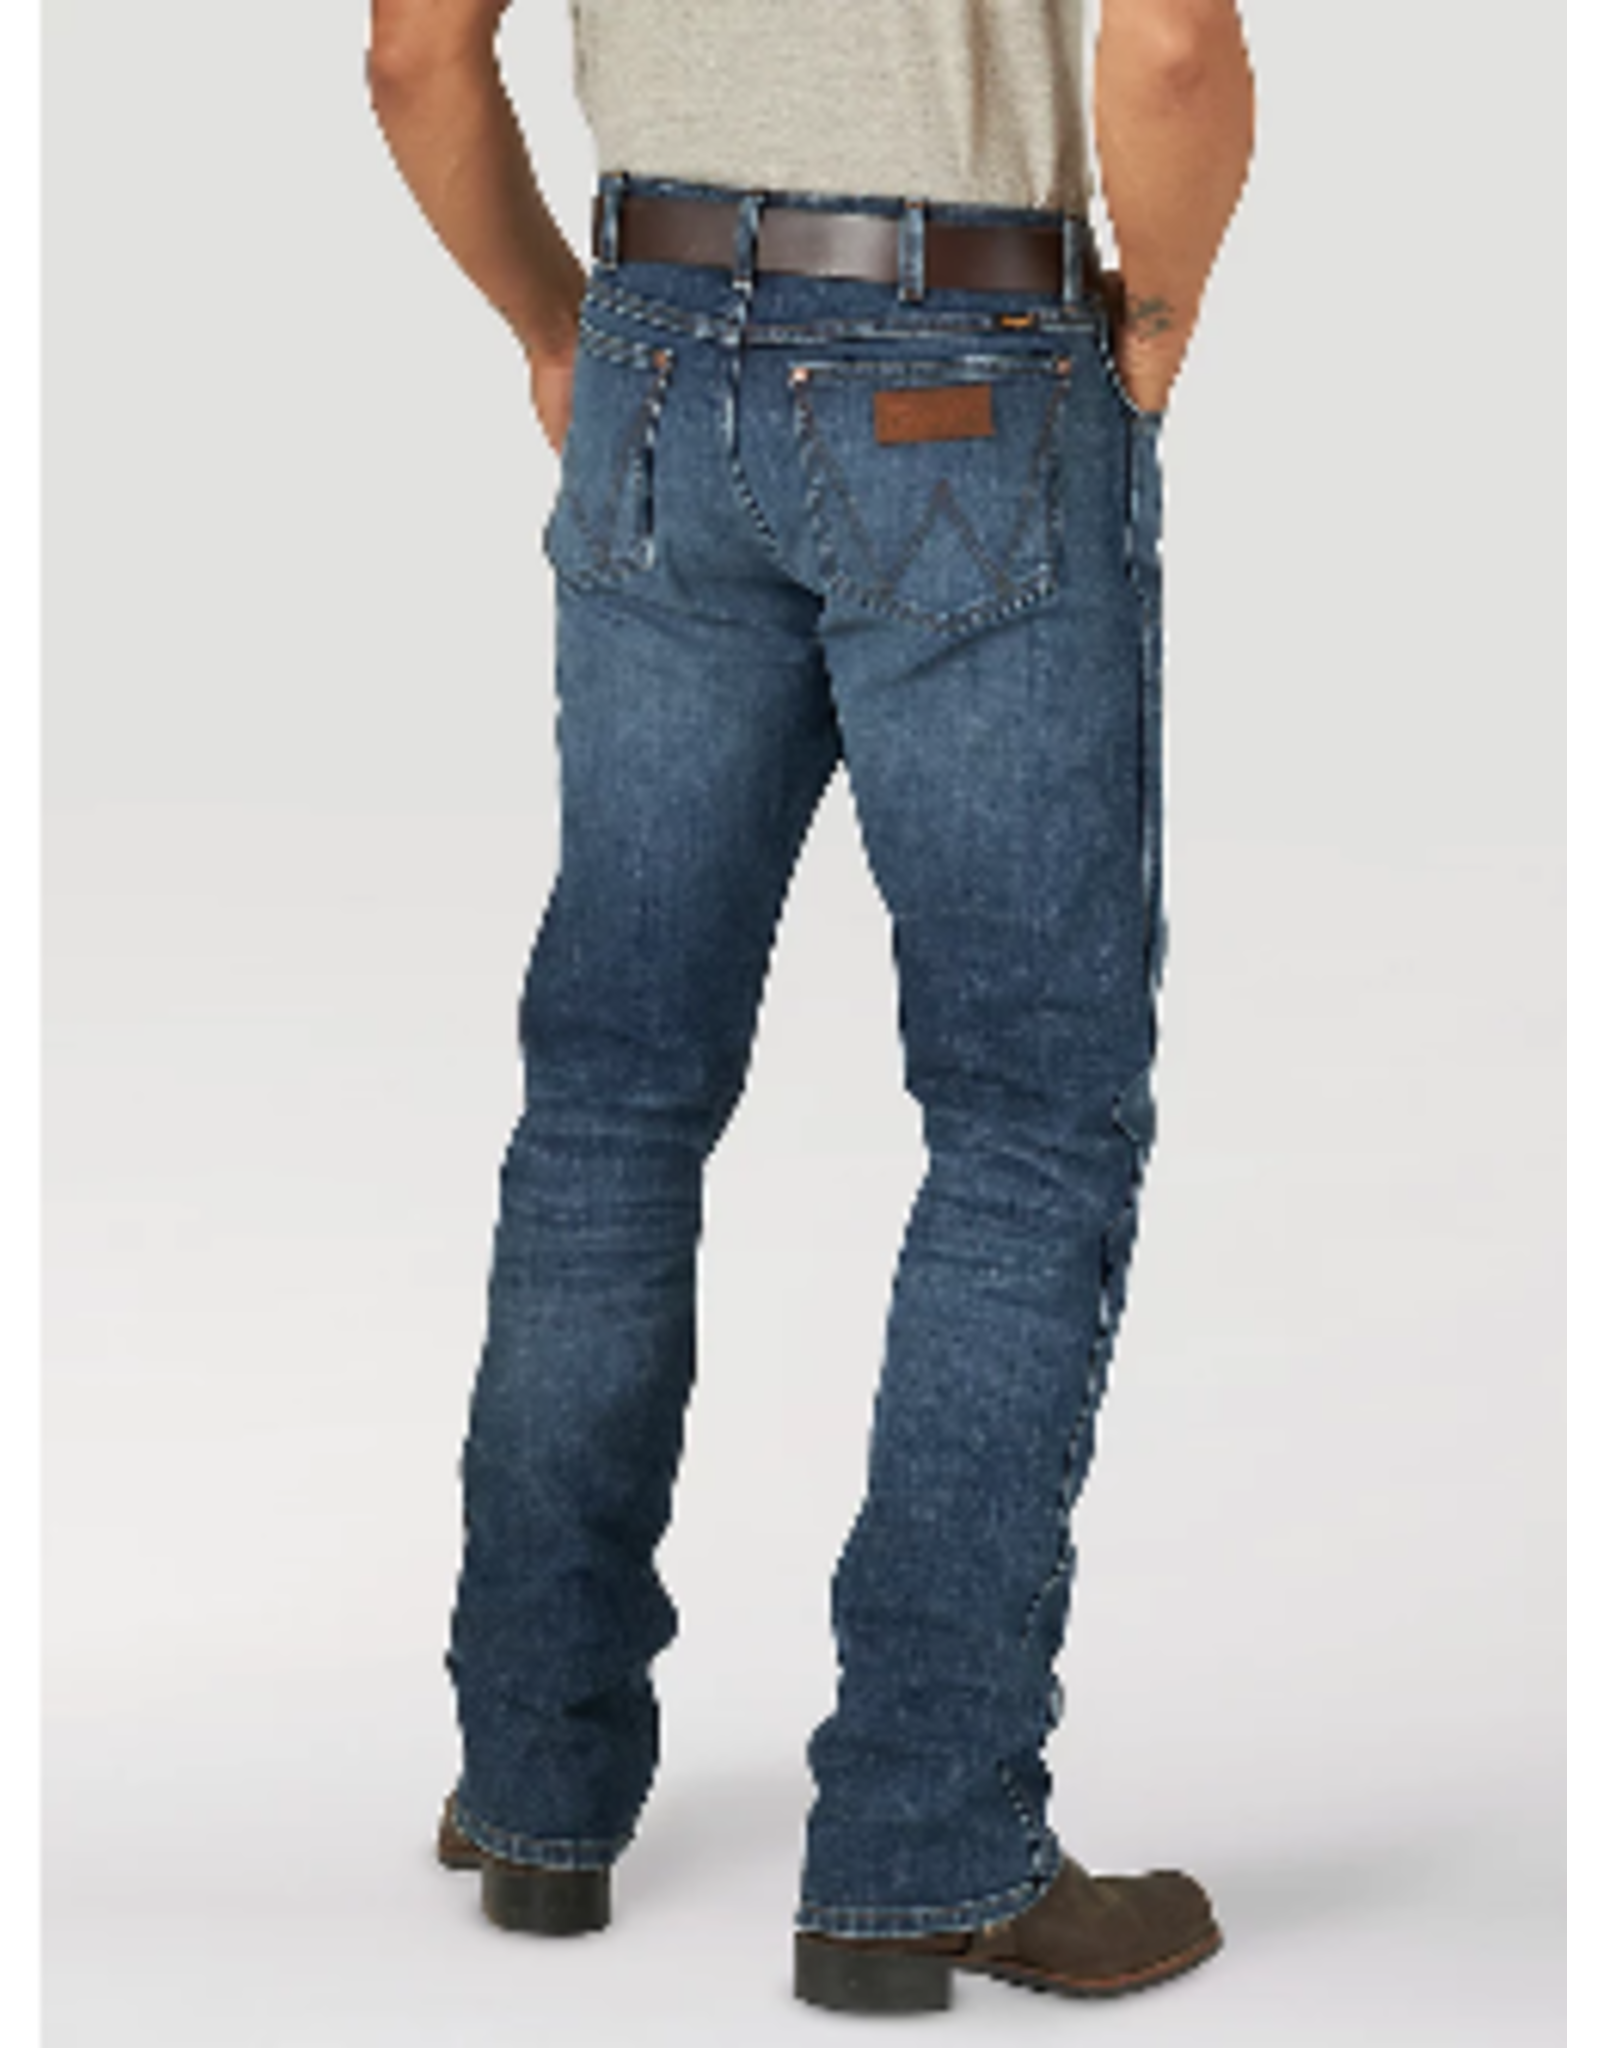 Wrangler - Mens Retro Premium Jeans - 77MWPCO